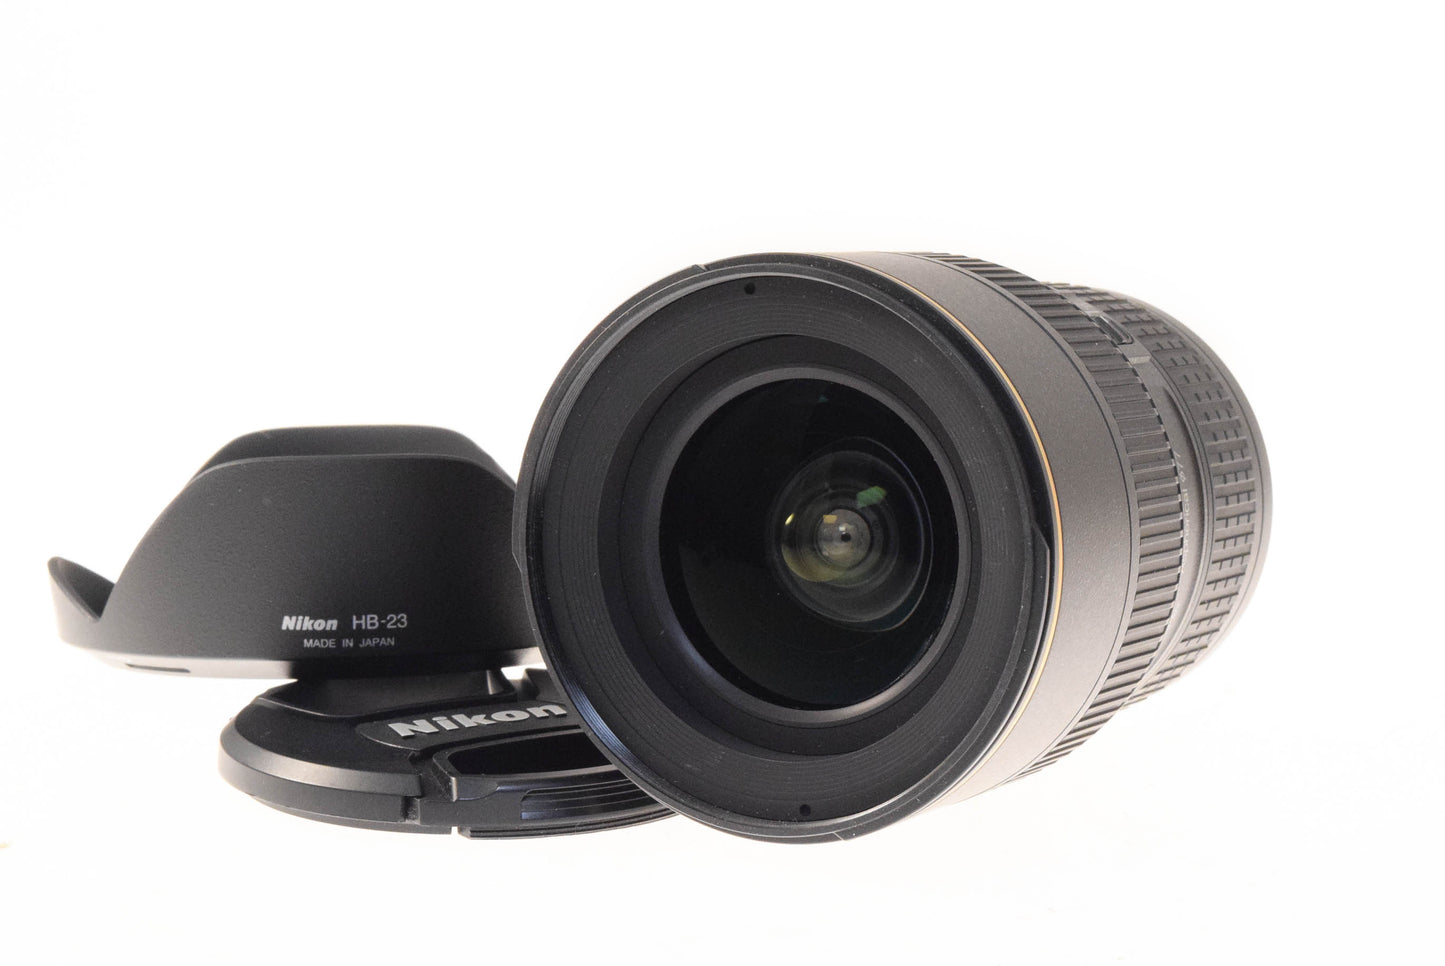 Nikon 16-35mm f4 N G ED AF-S Nikkor VR